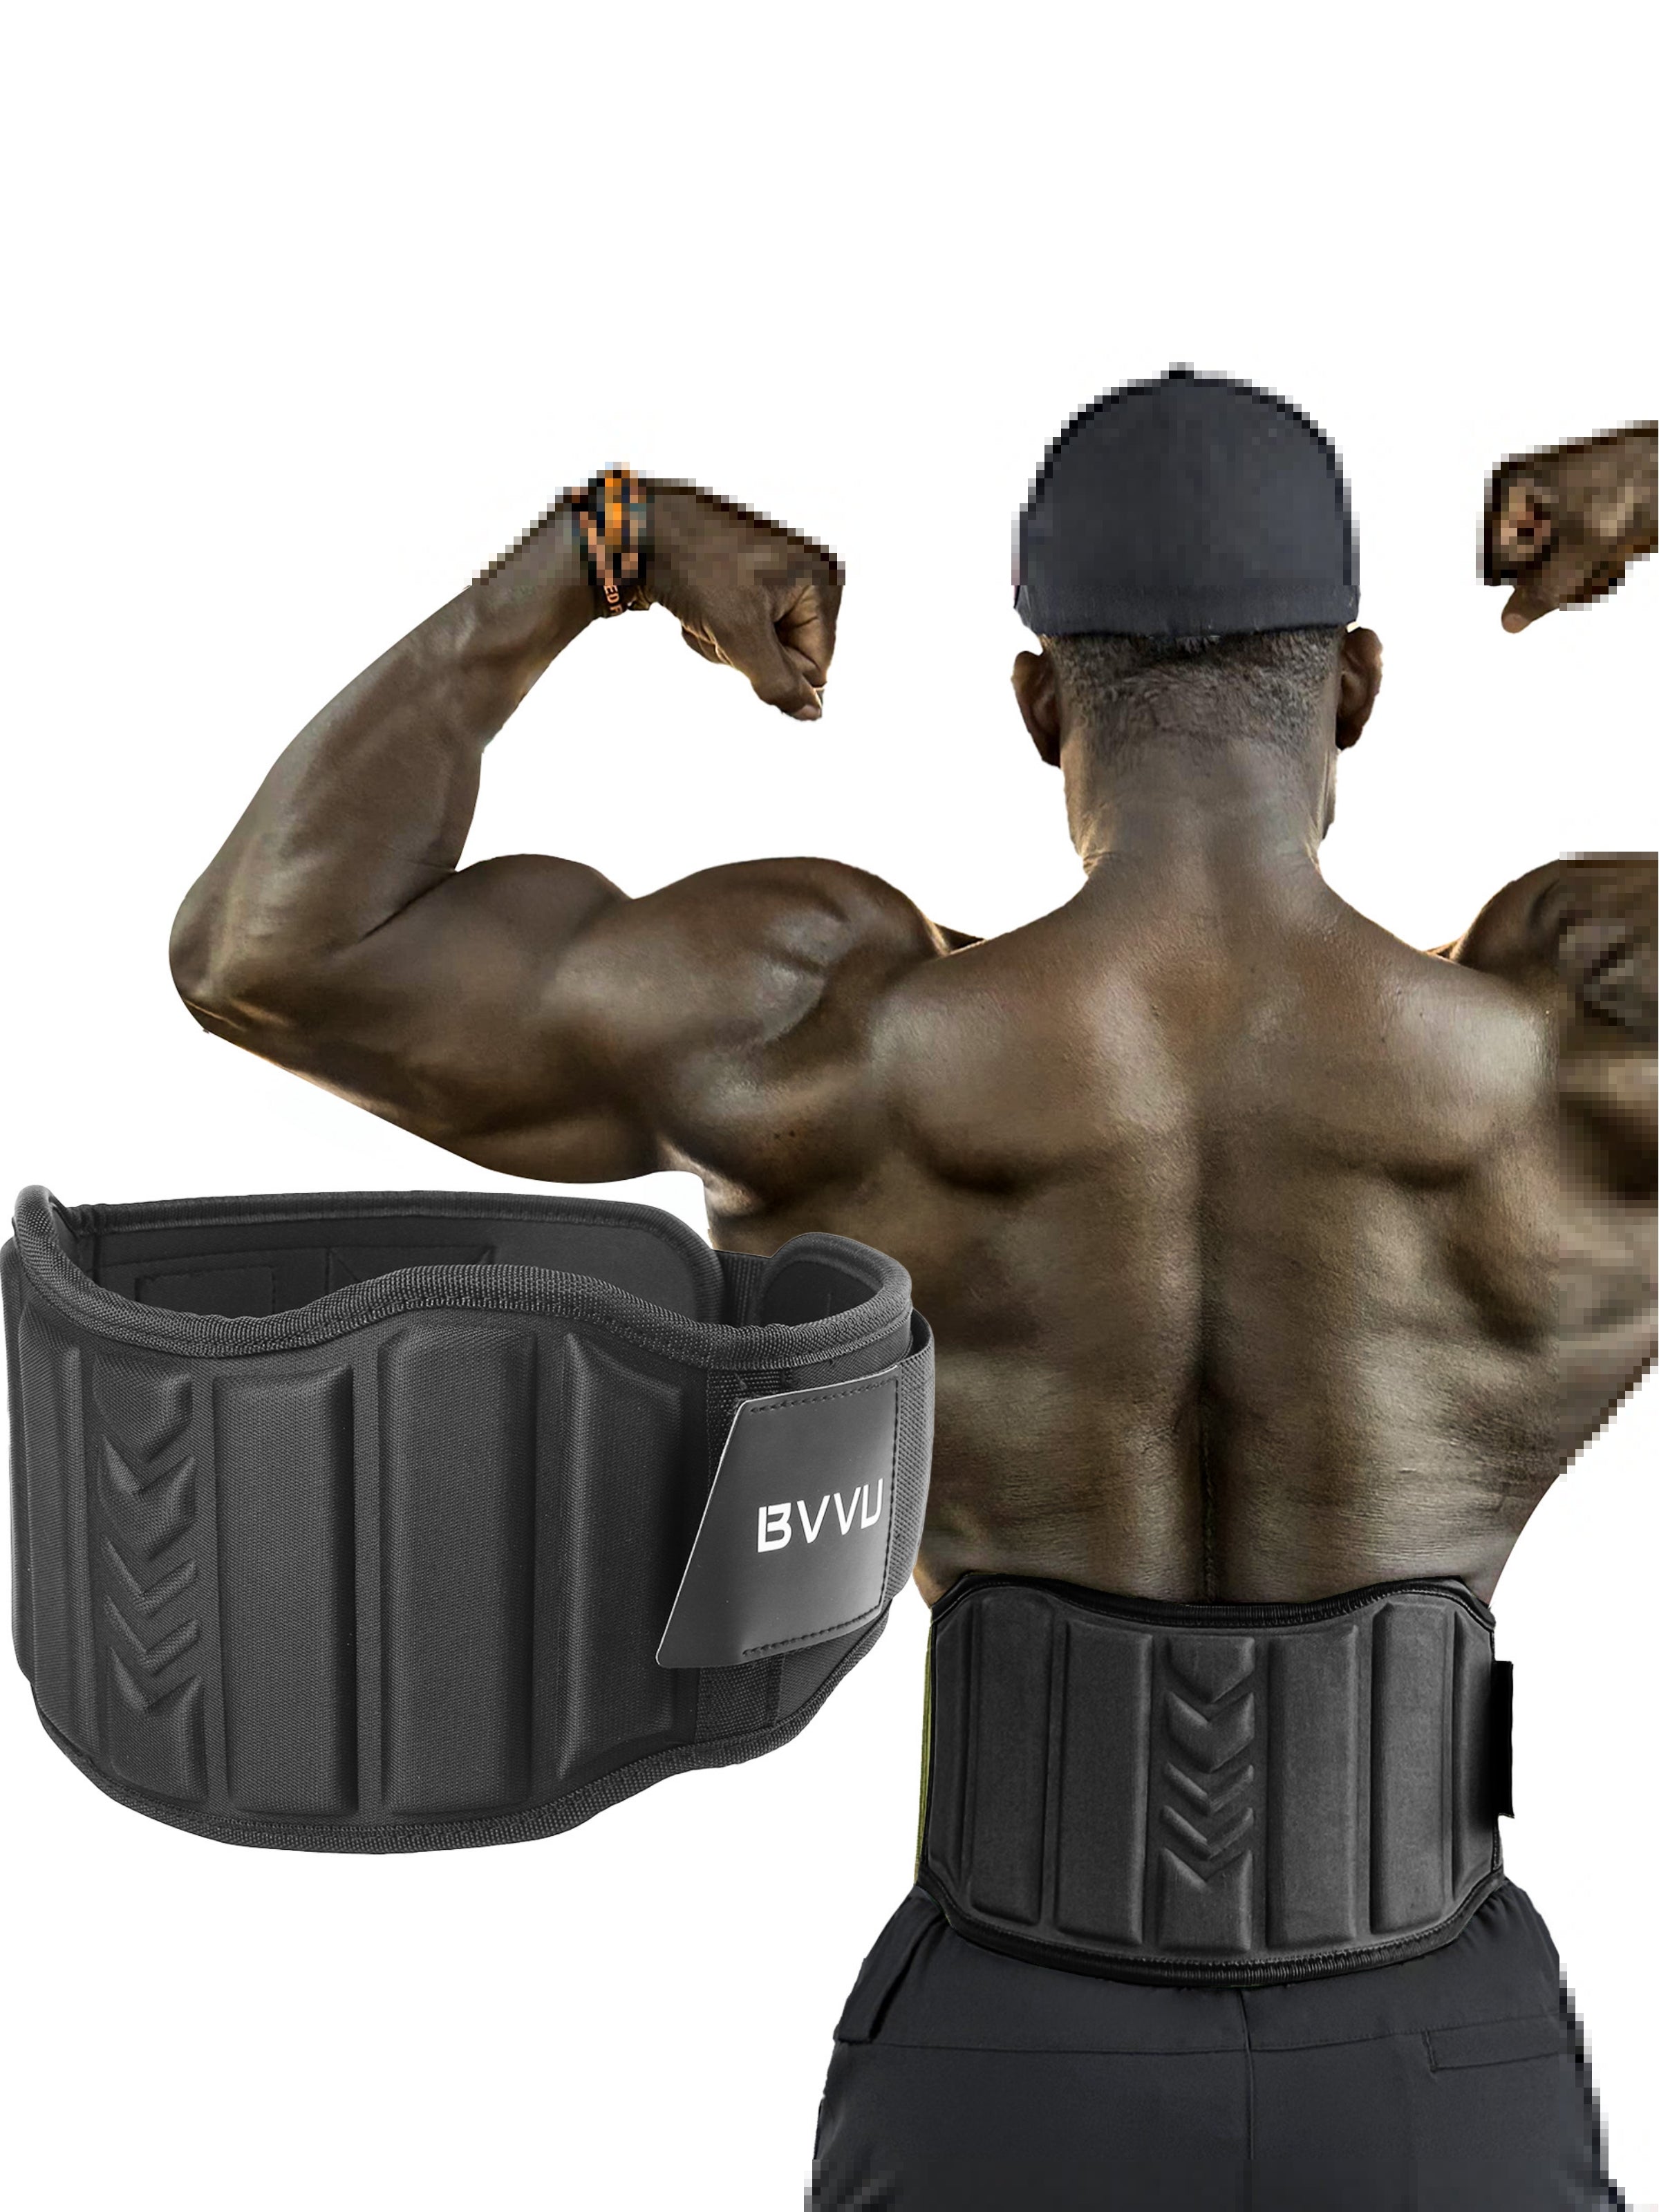 BVVU Weight Lifting Belts for Men Quick Locking Gym Belt for Workout Lumbar Support,Cross Training,Squat Belt Fitness Equipment